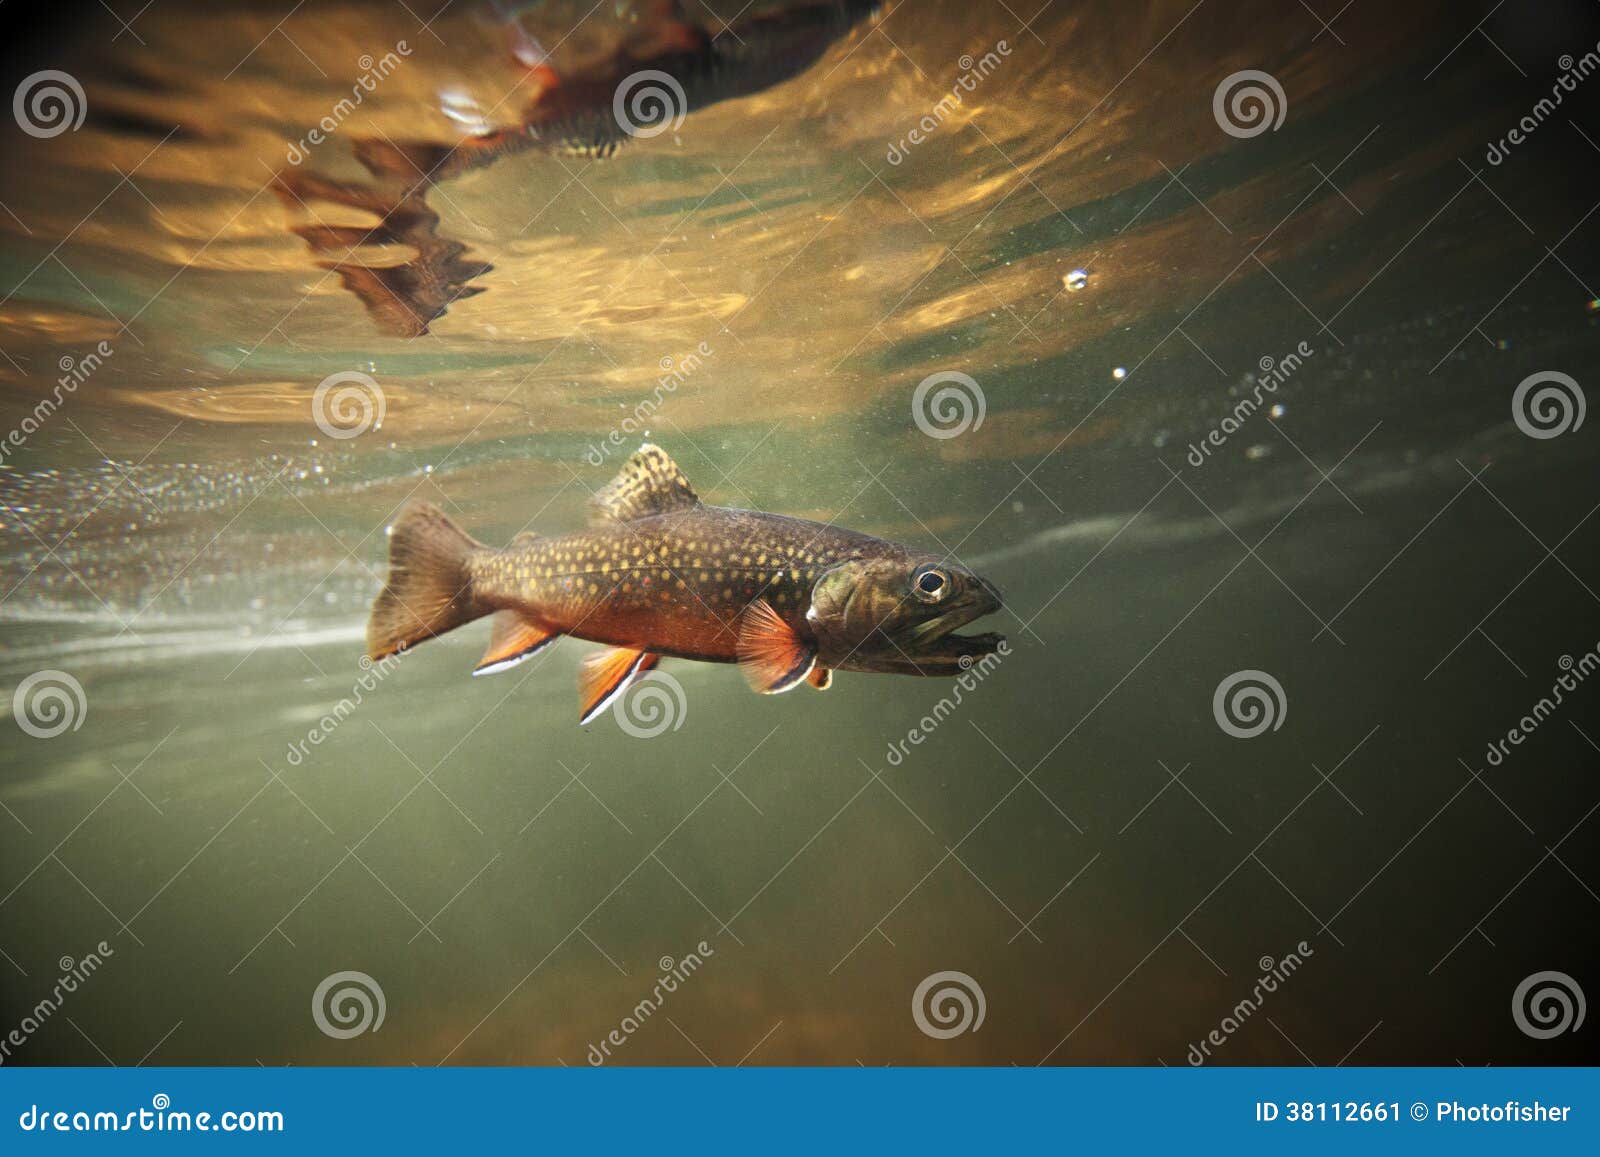 wild brook trout underwater